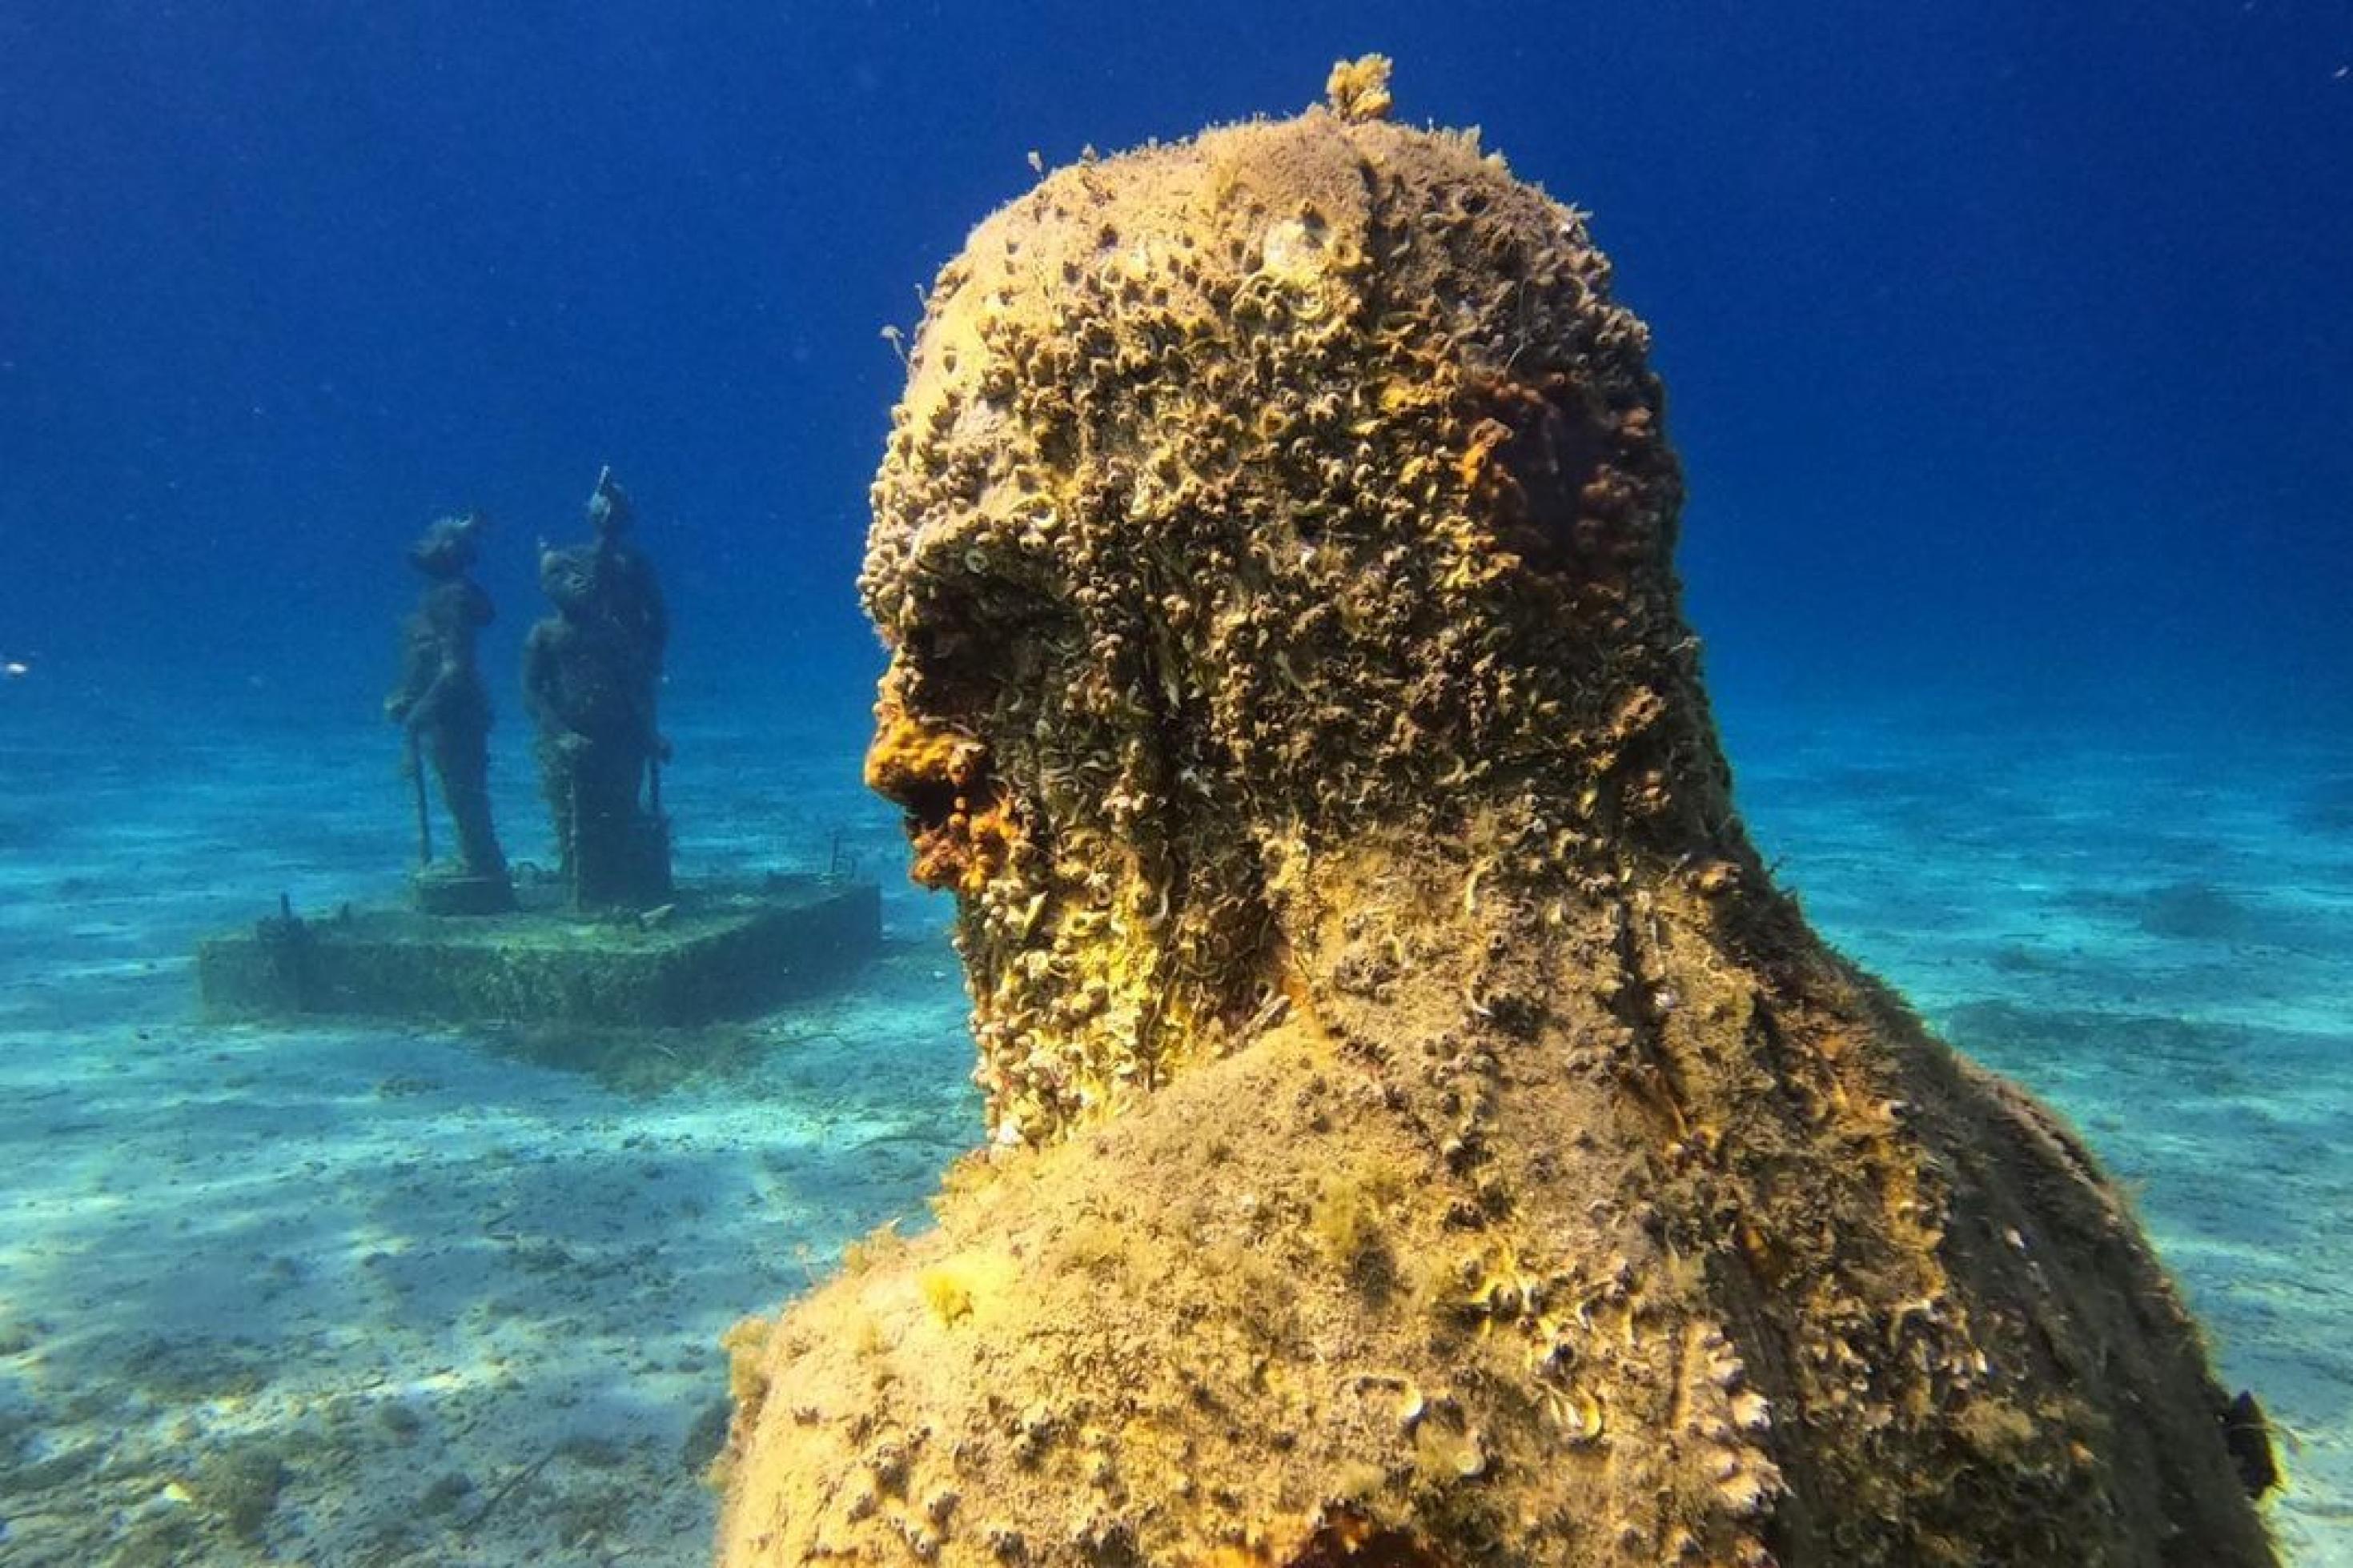 Nahaufnahme der Poseidon-Statue. Im Hintergrund sind weitere Statuen zu erkennen.